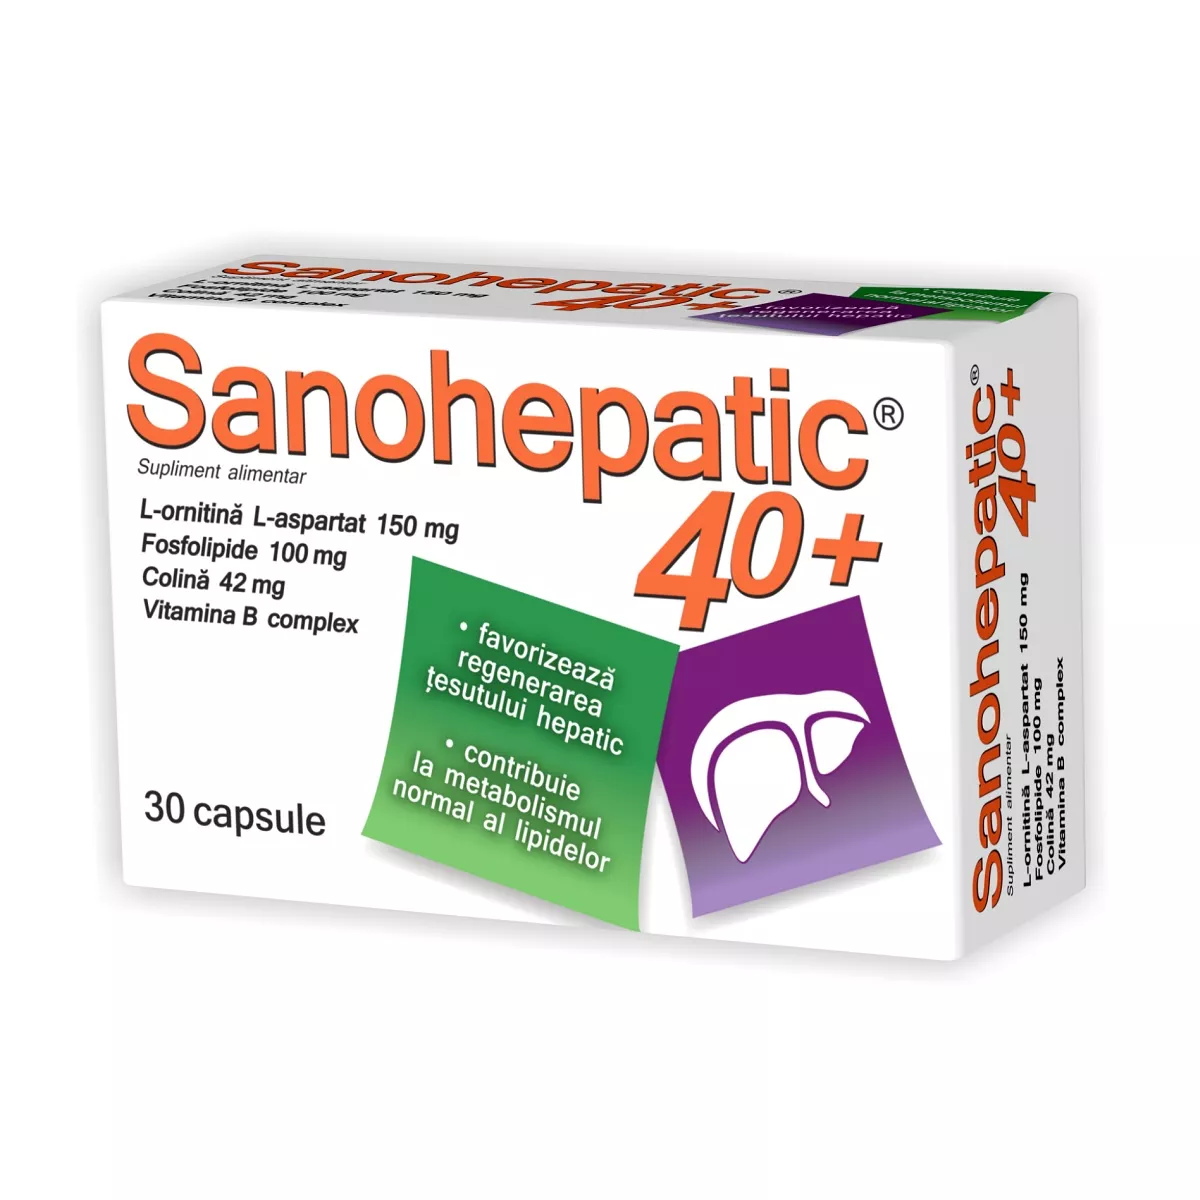 Sanohepatic 40+ x 30cps (Zdrovit), [],epastila.ro